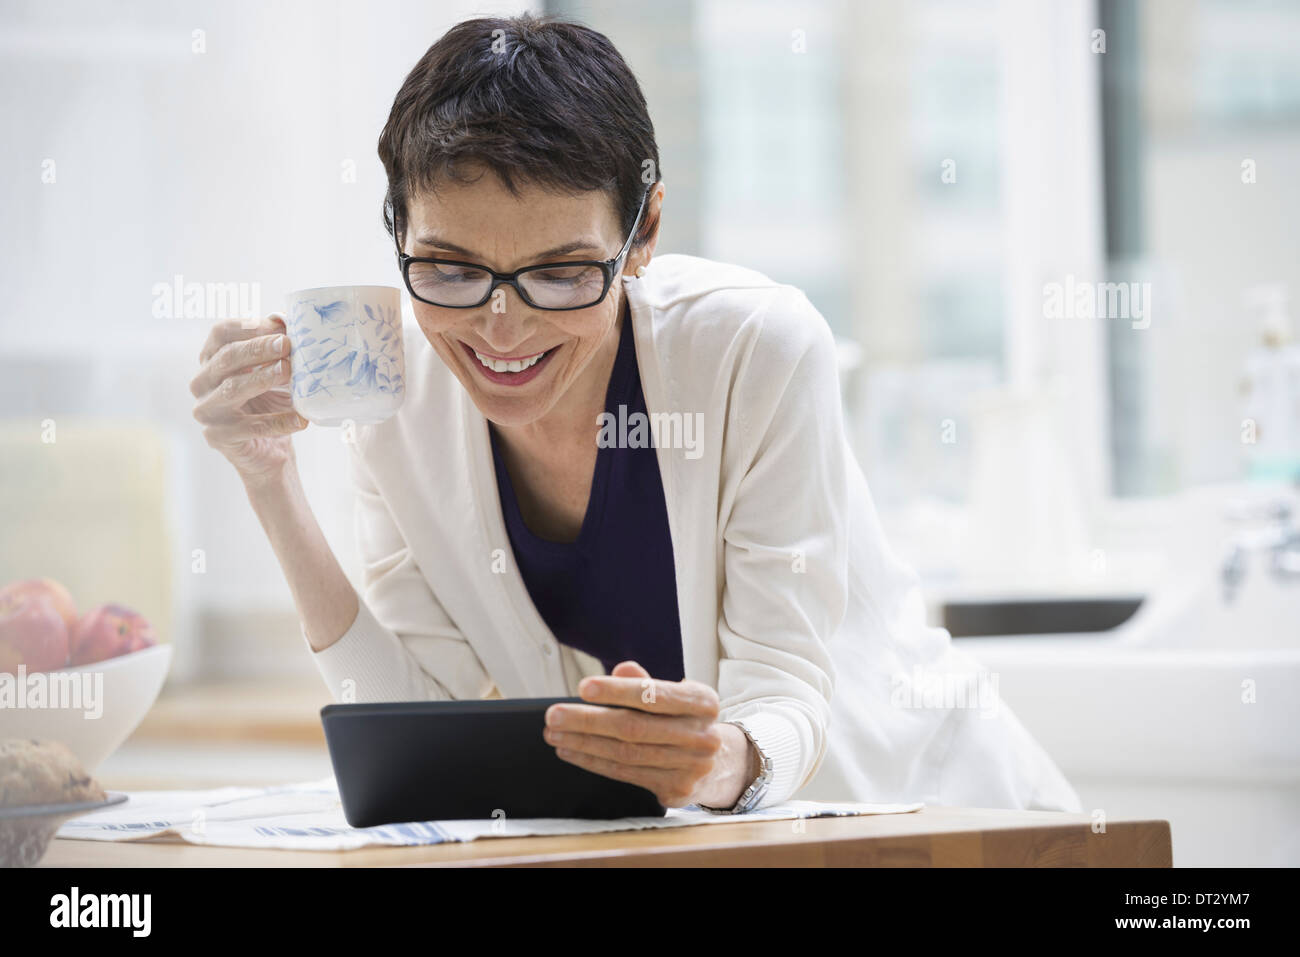 La ville de New York une femme habillée pour travailler en veste crème tenant une tasse de café contrôler sa tablette numérique Banque D'Images